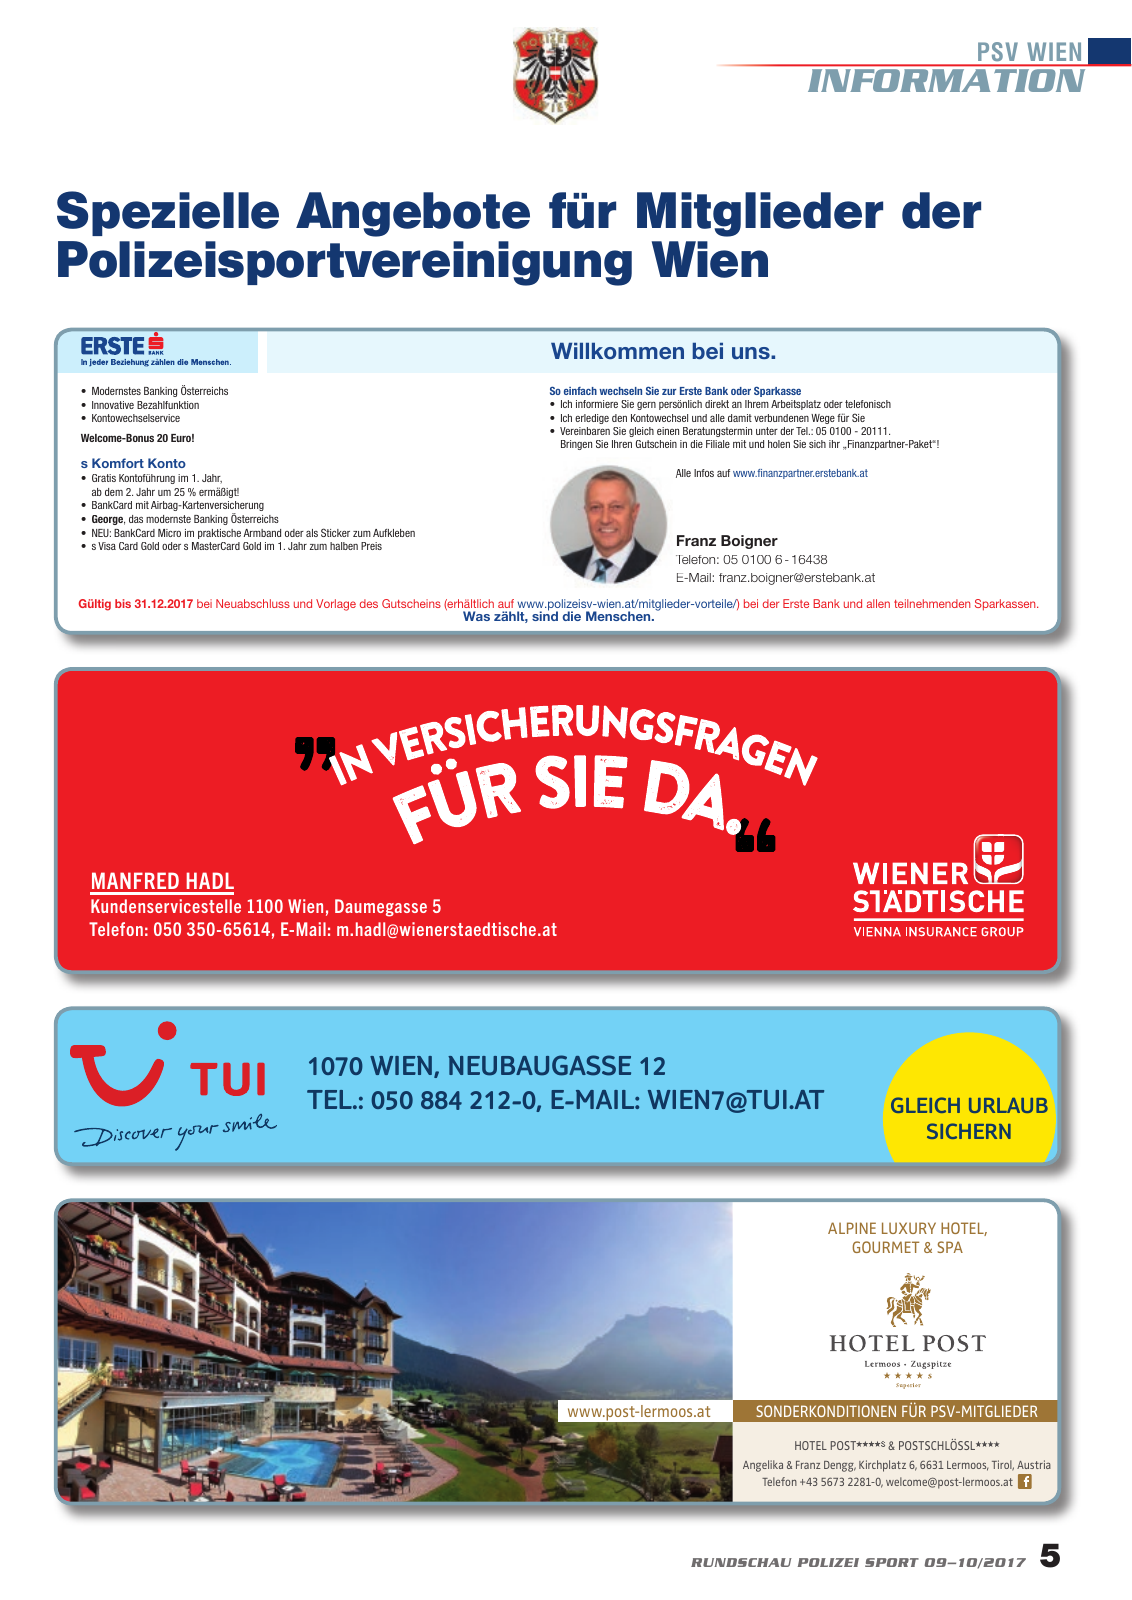 Vorschau Rundschau Polizei Sport 09-10/2017 Seite 5